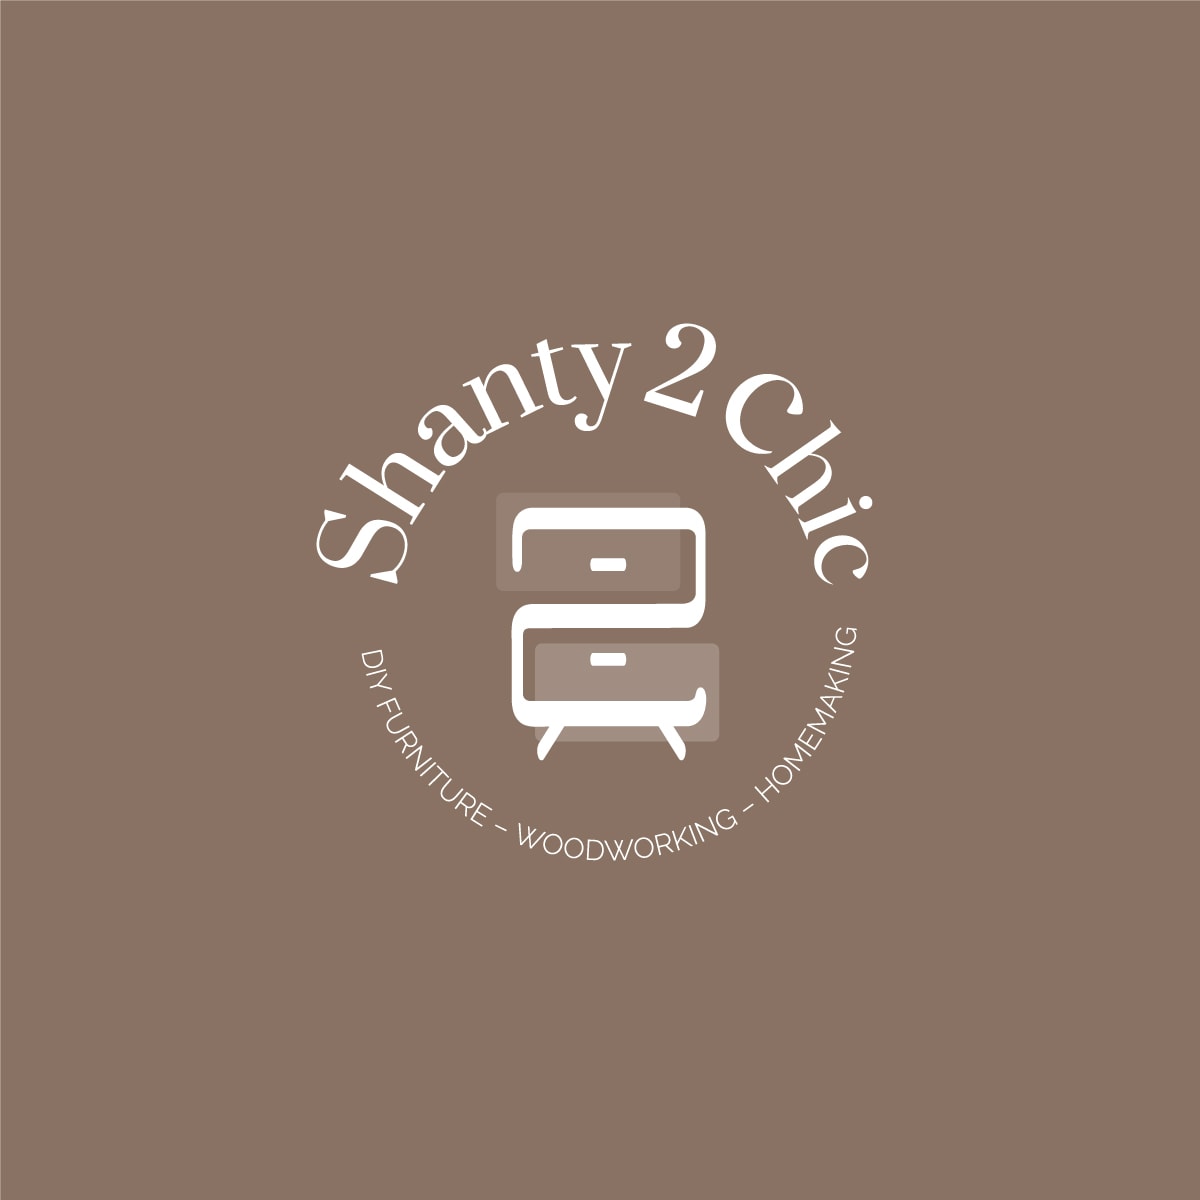 Shanty 2 Chic Blog Submark Logo white on dark background